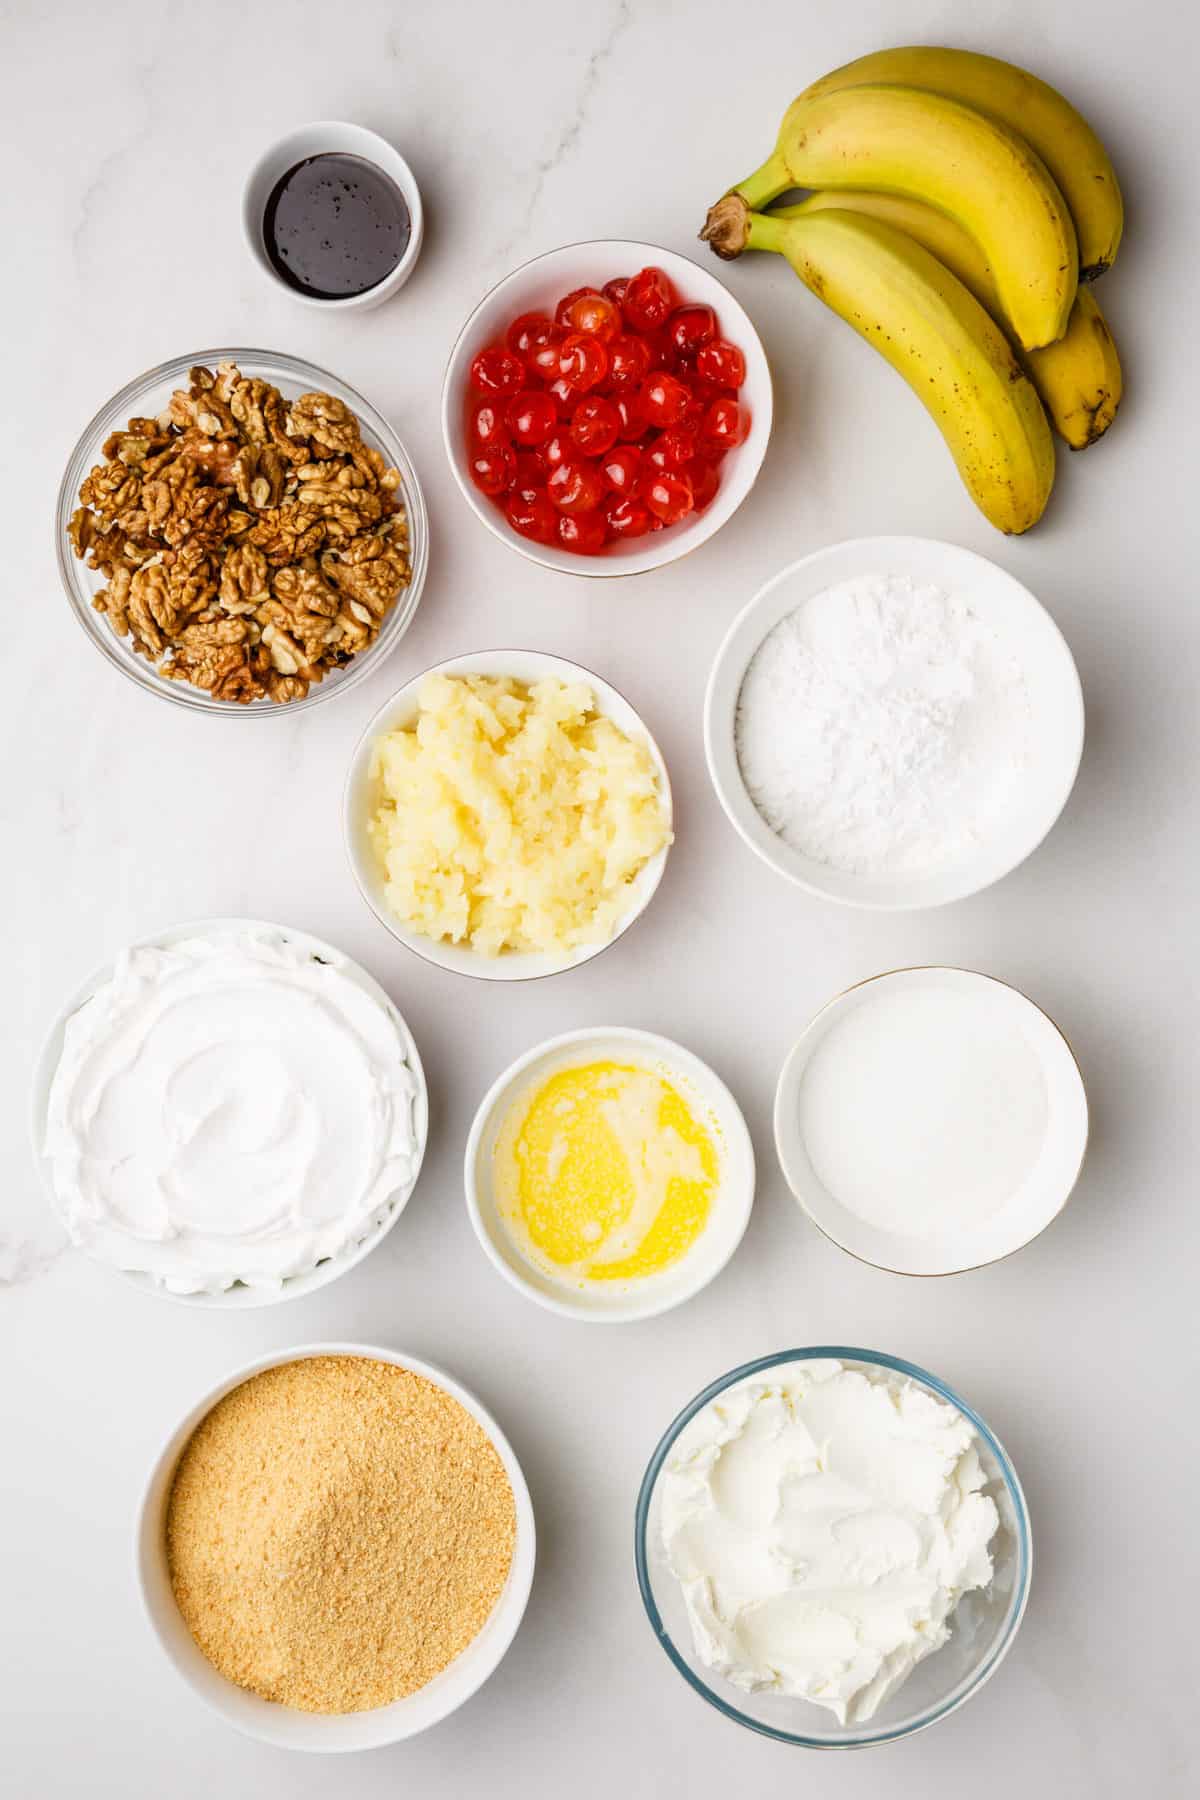 ingredients to make banana split cake